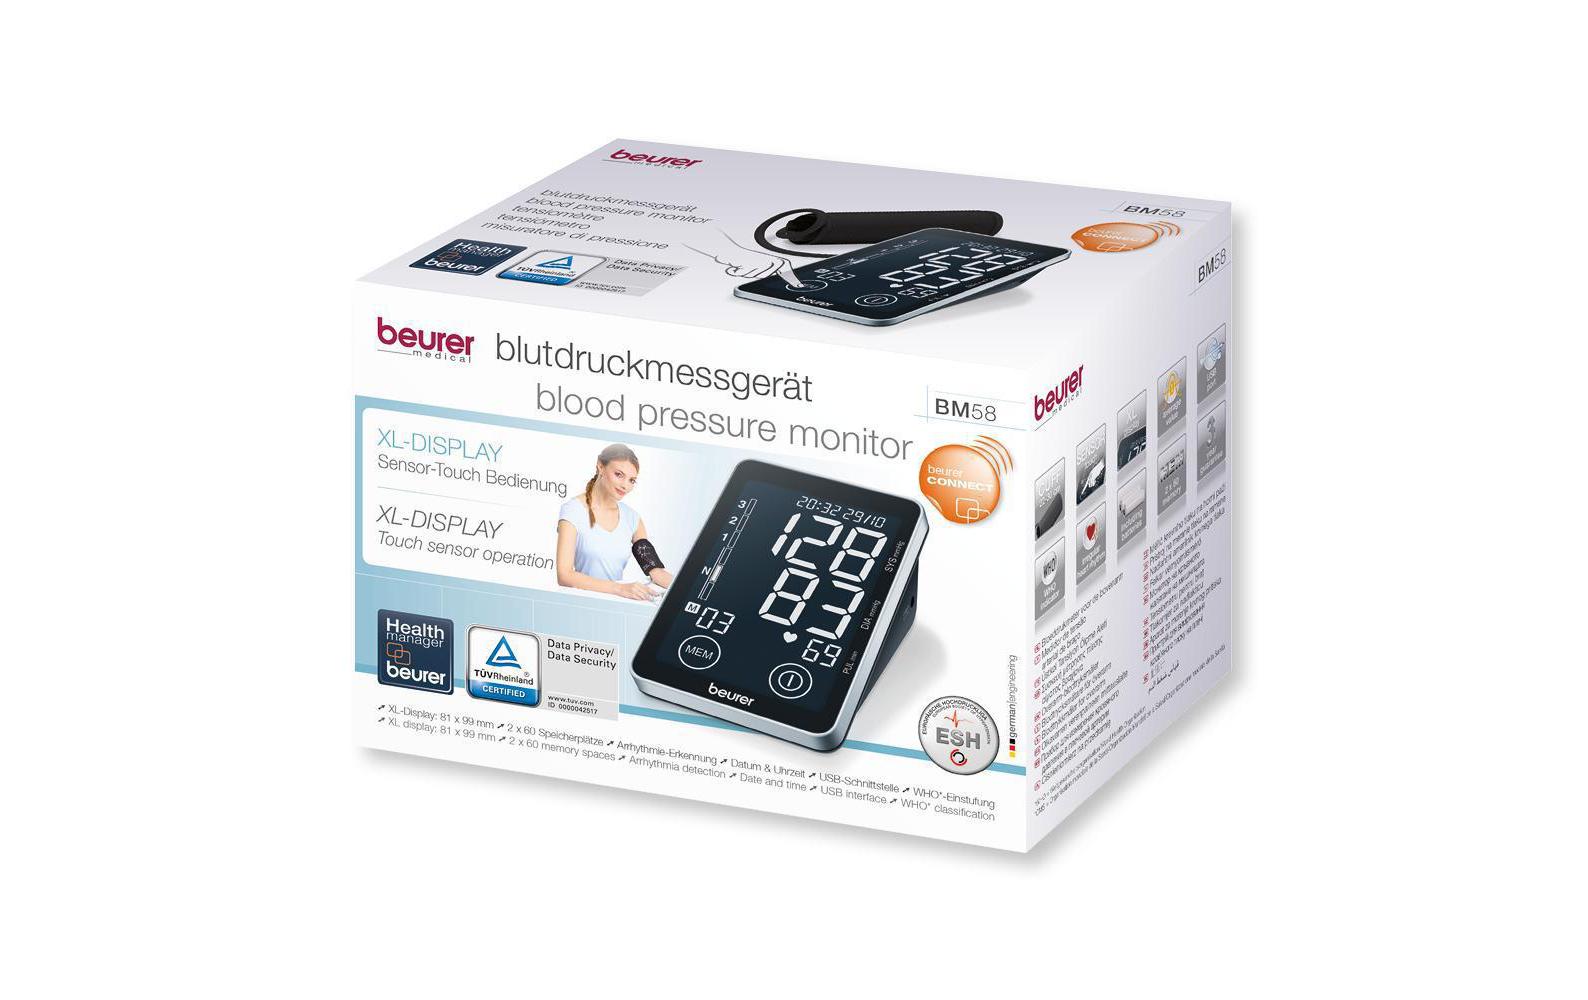 Beurer Blutdruckmessgerät BM58